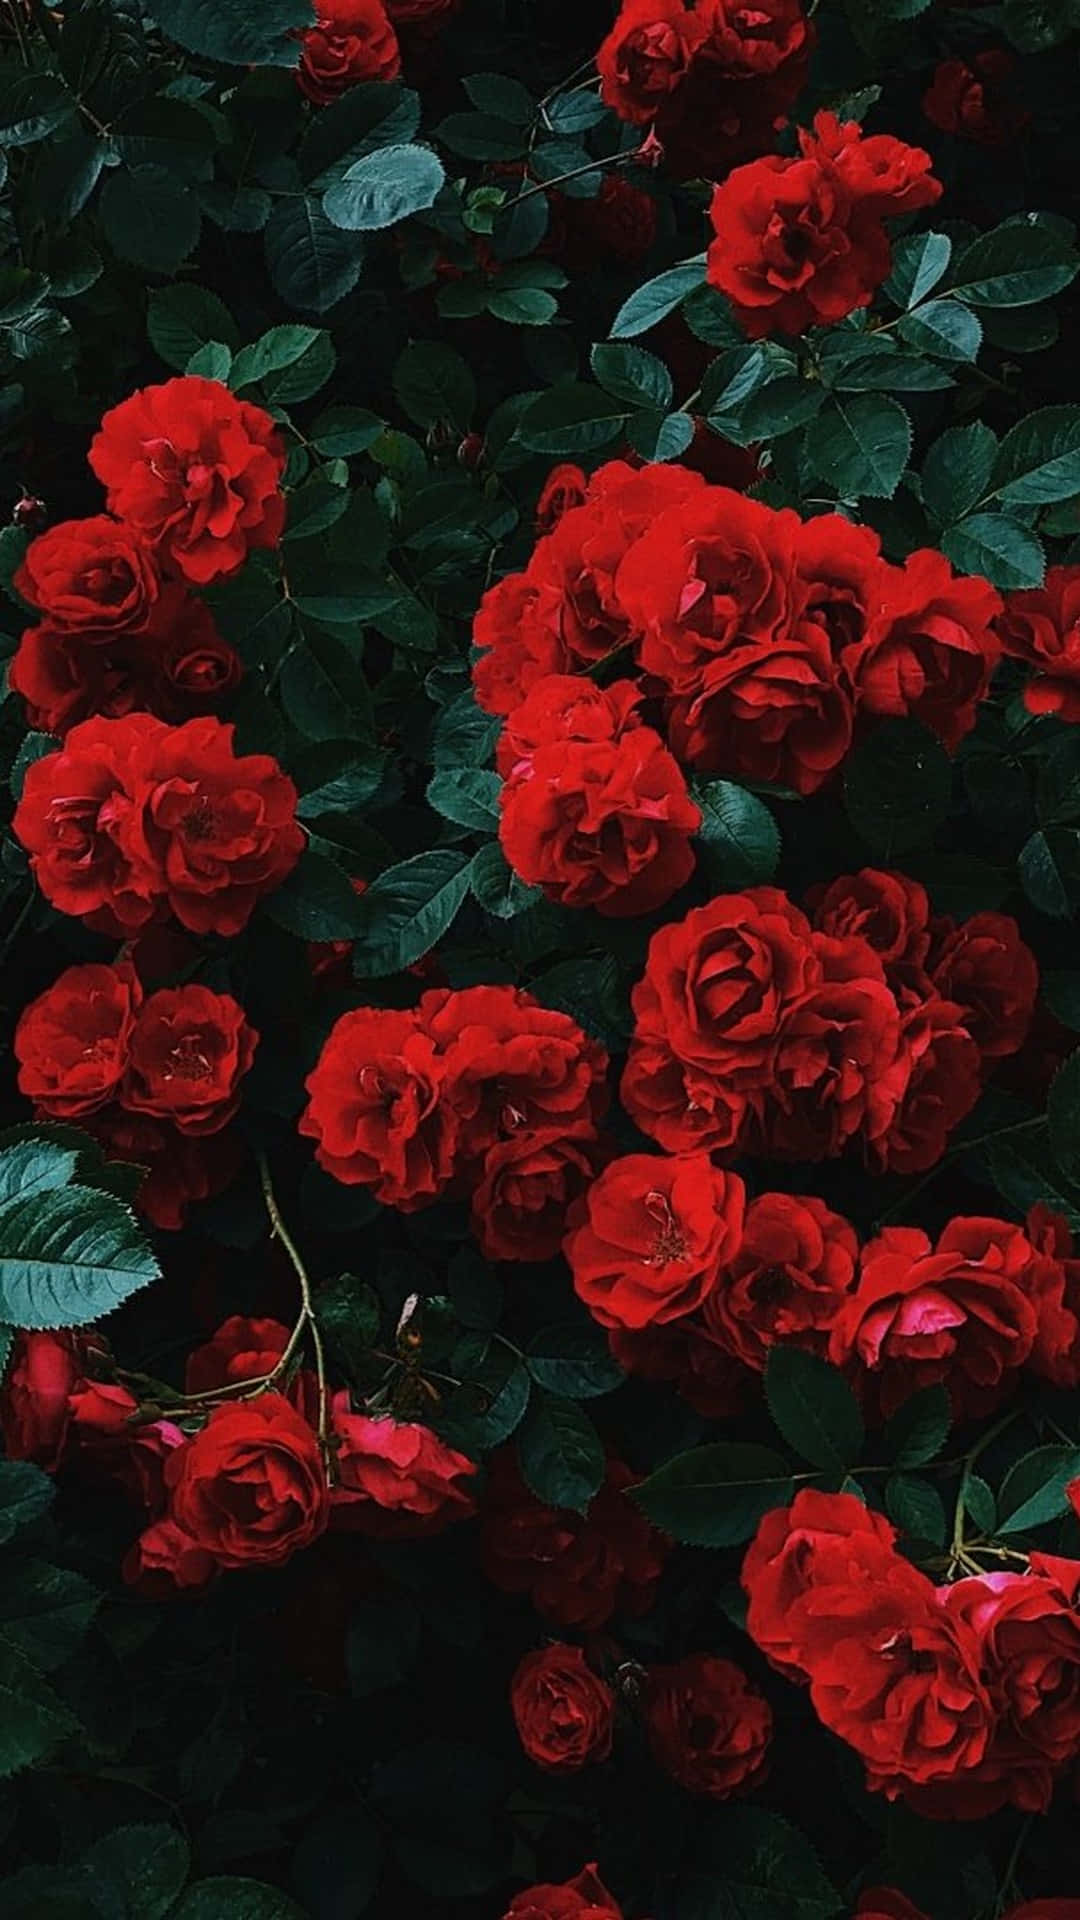 Imagenestética De Una Rosa Roja.